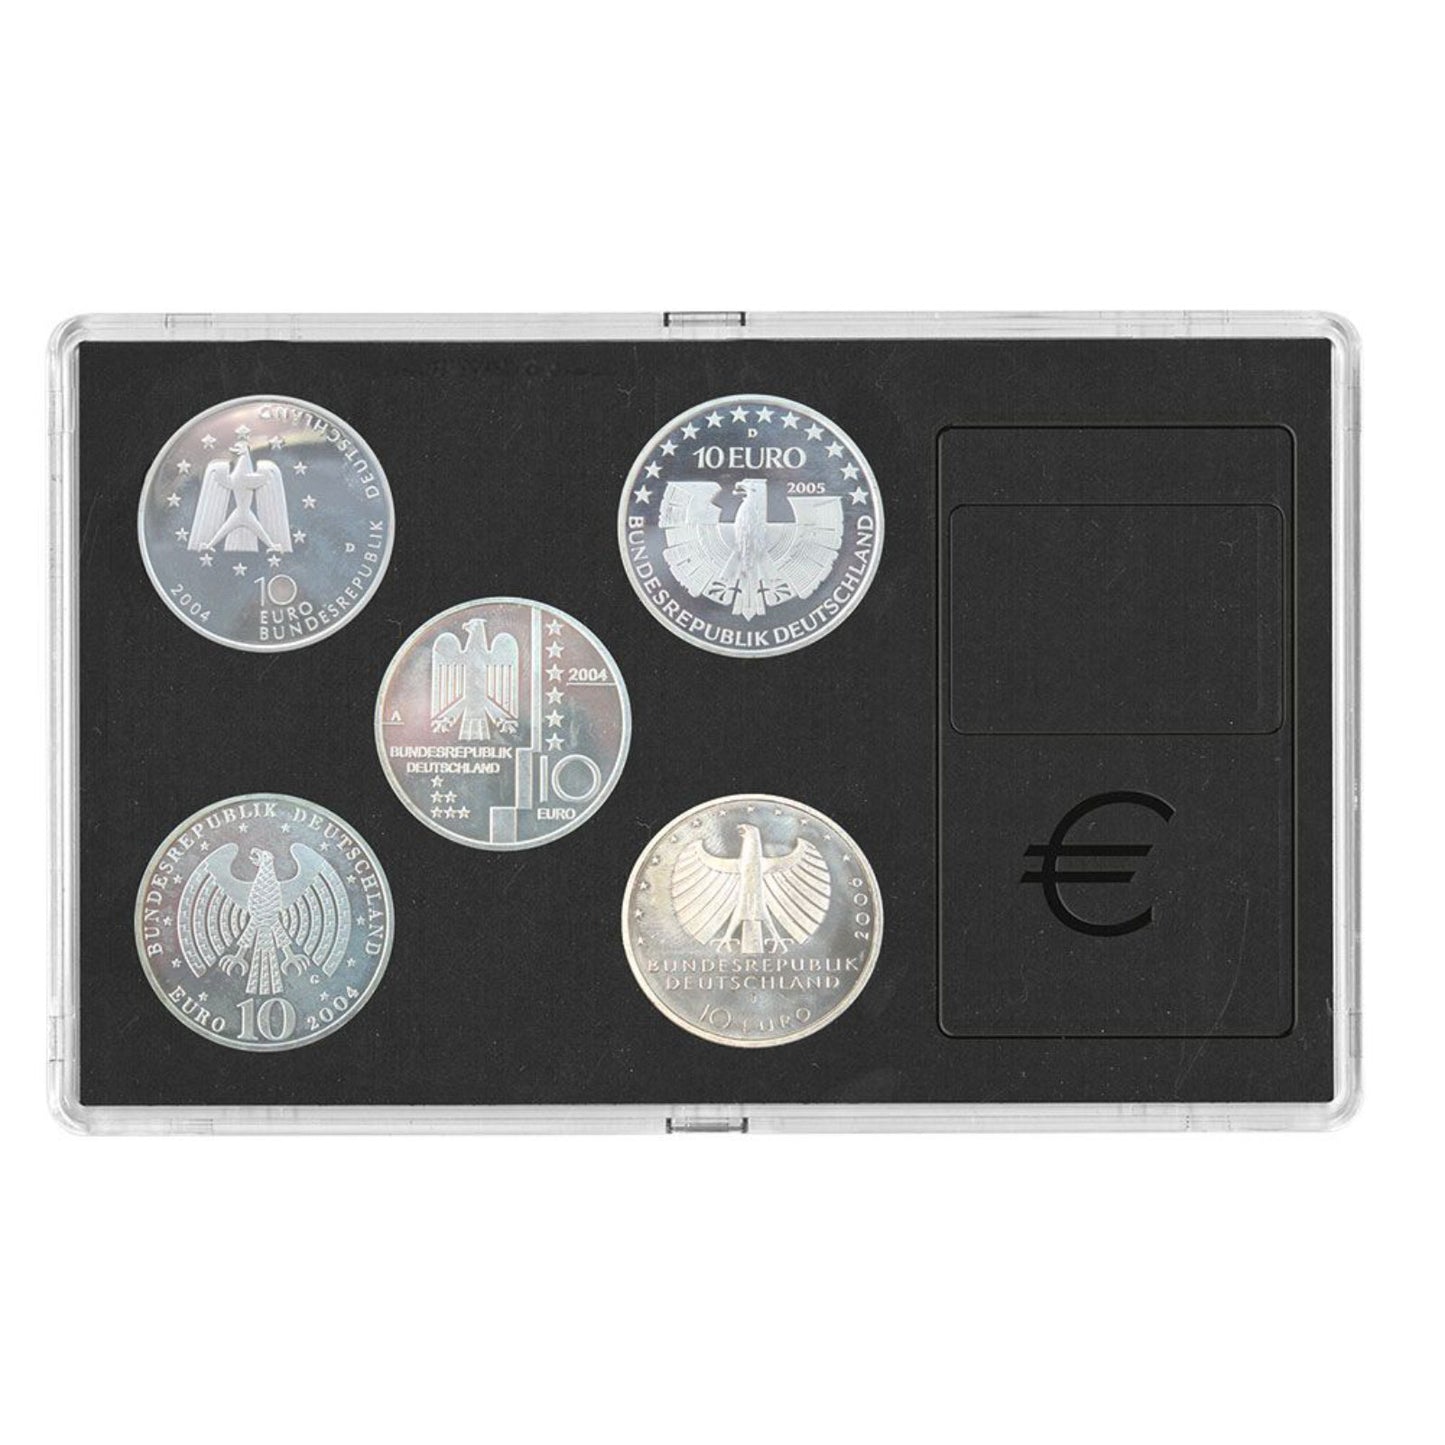 Acryl Münzen Etui - Transparent mit schwarzer Einlage, stapelbar